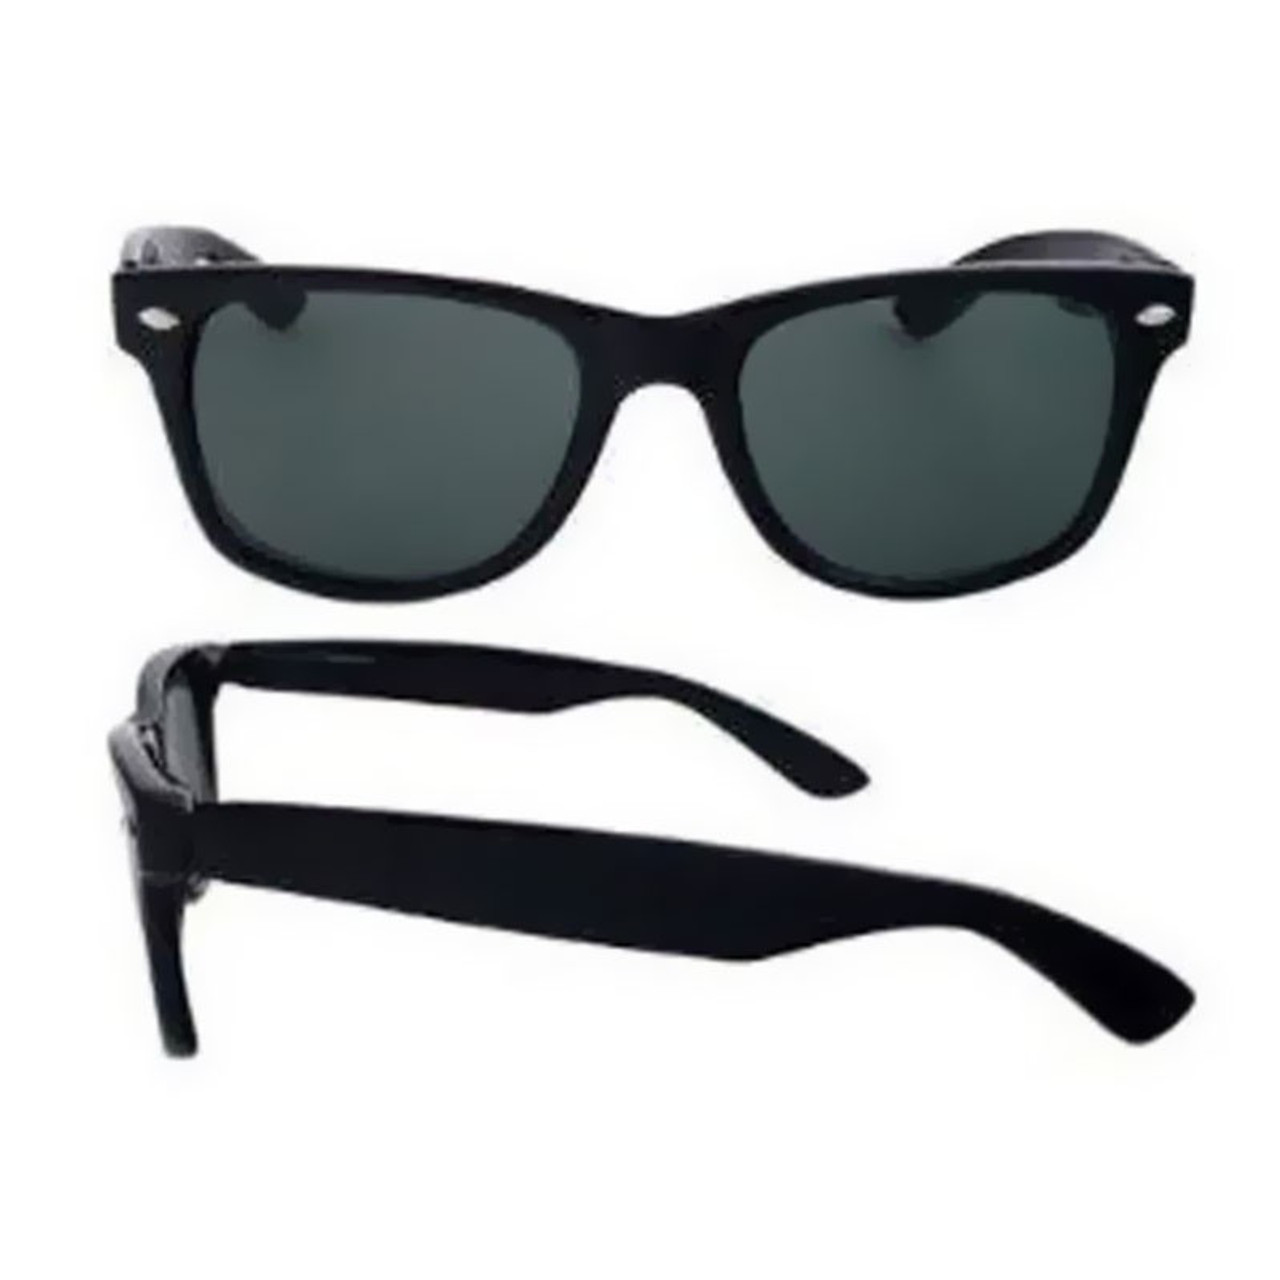 Black Wayfarer Sunglasses for Boys and Girls